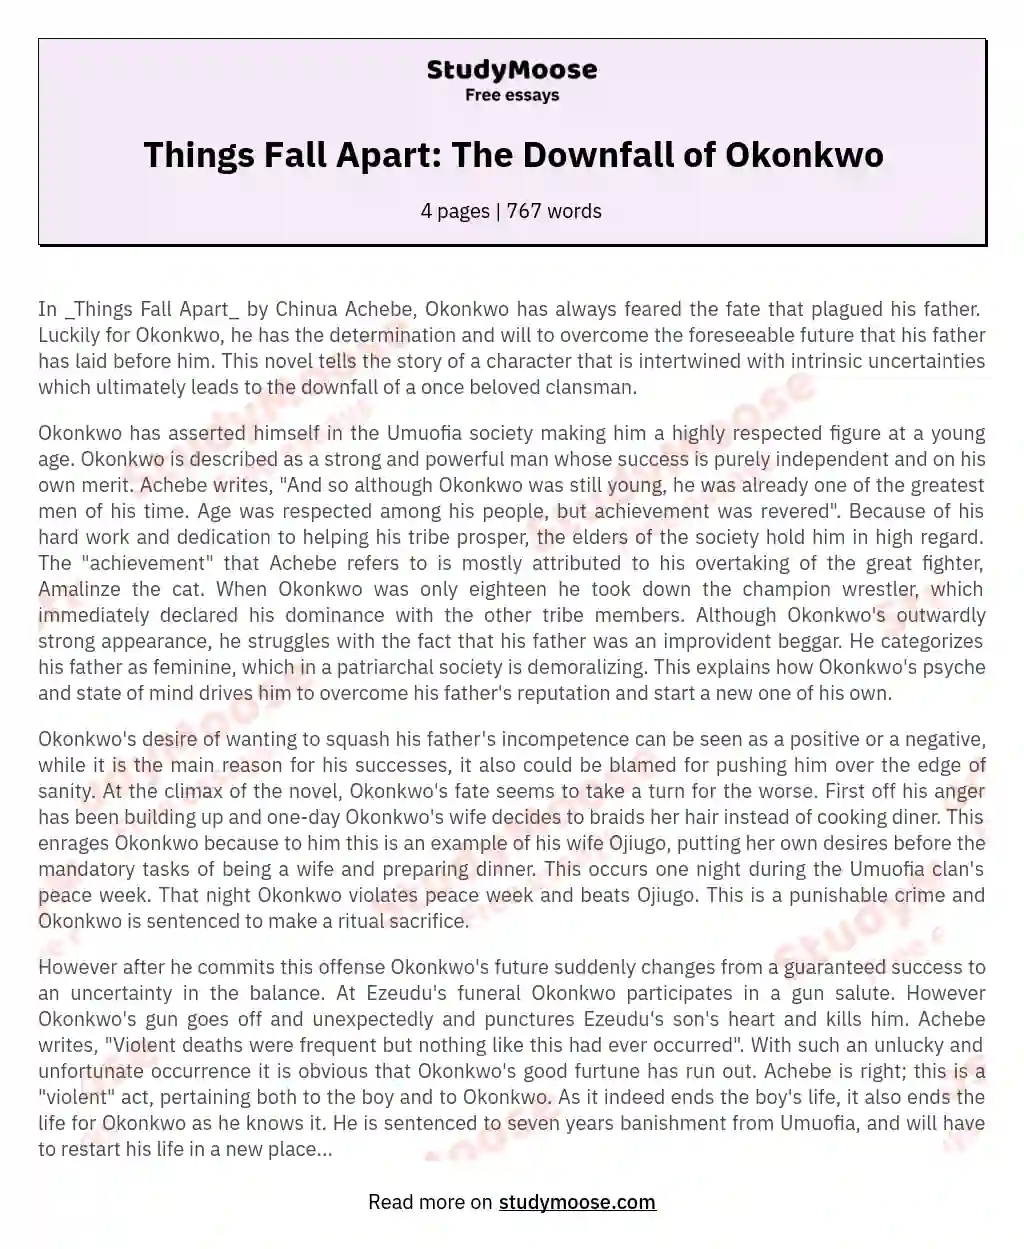 Things Fall Apart: The Downfall of Okonkwo essay